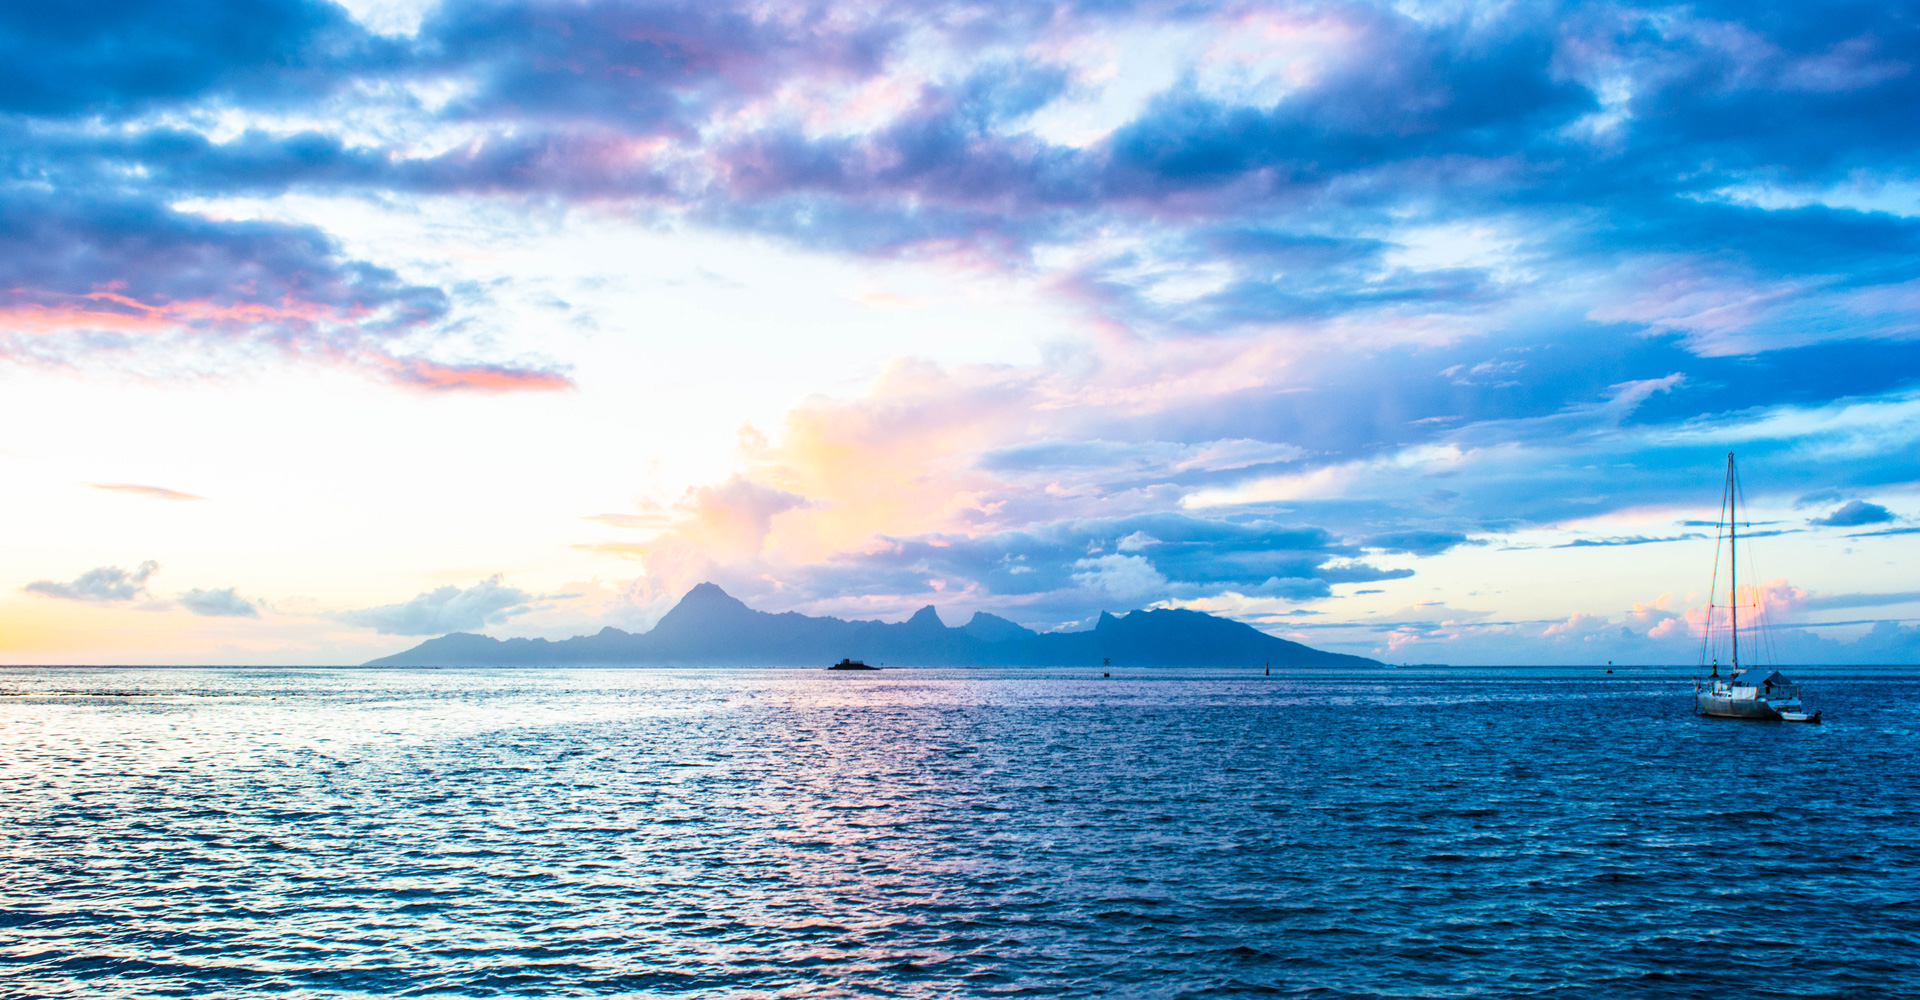 Sunset in Tahiti © Stephanie K. Graf